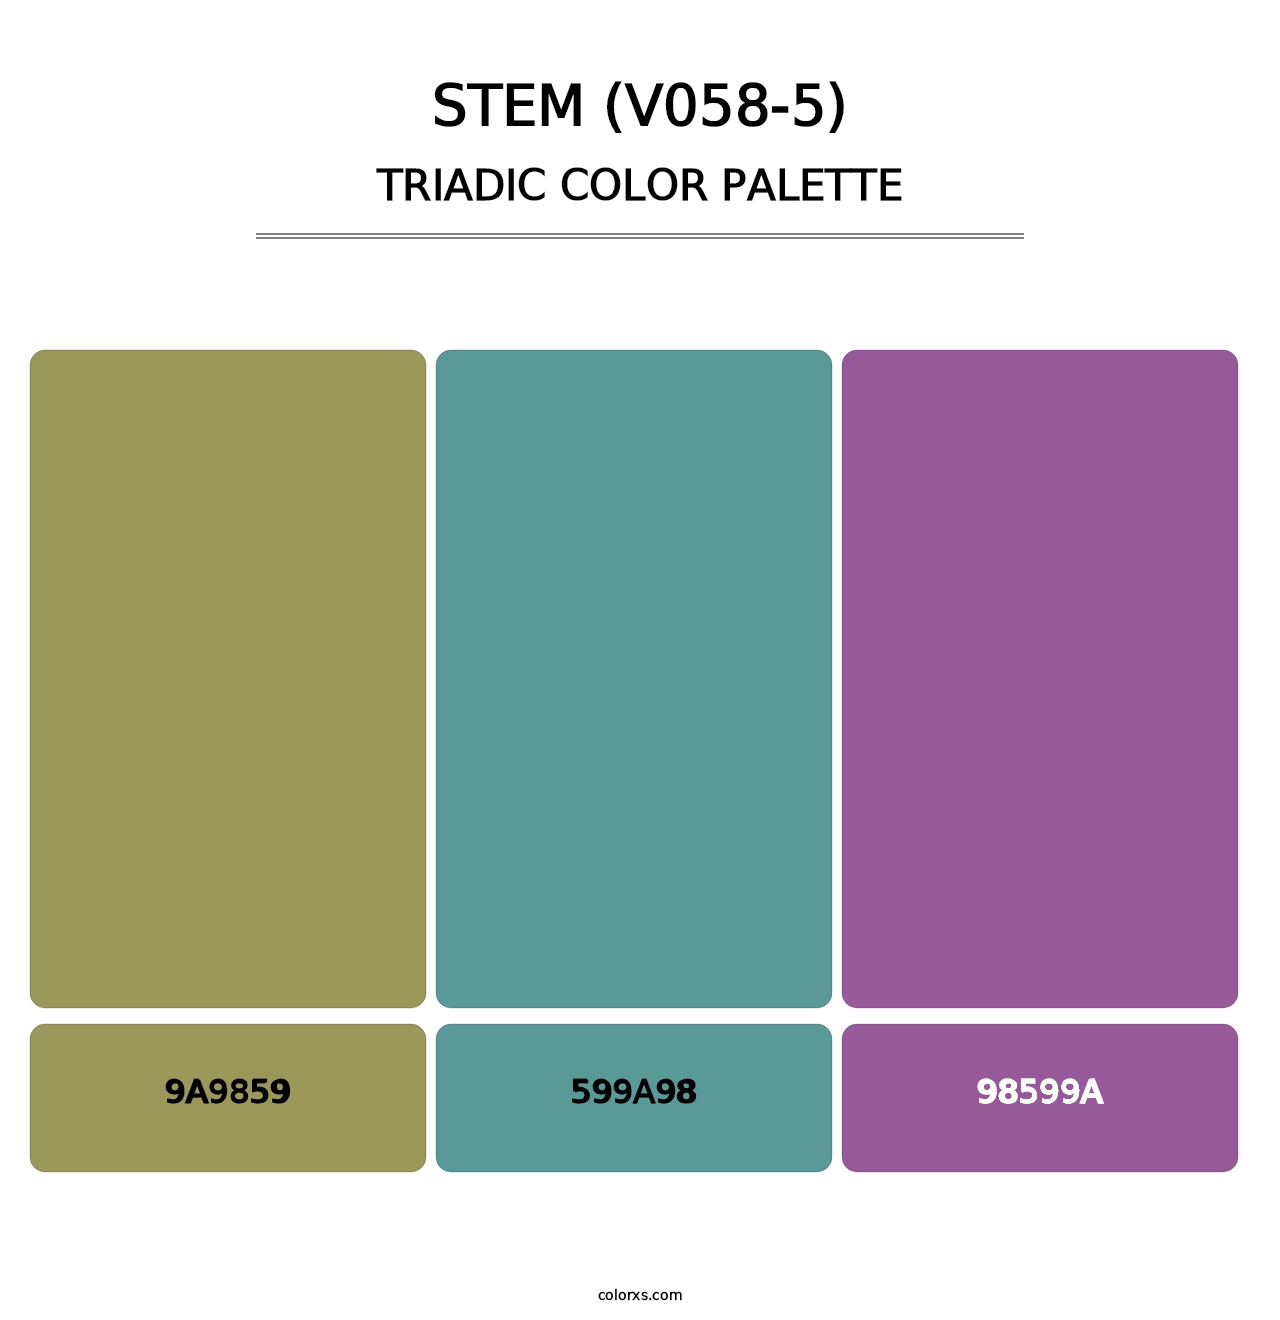 Stem (V058-5) - Triadic Color Palette